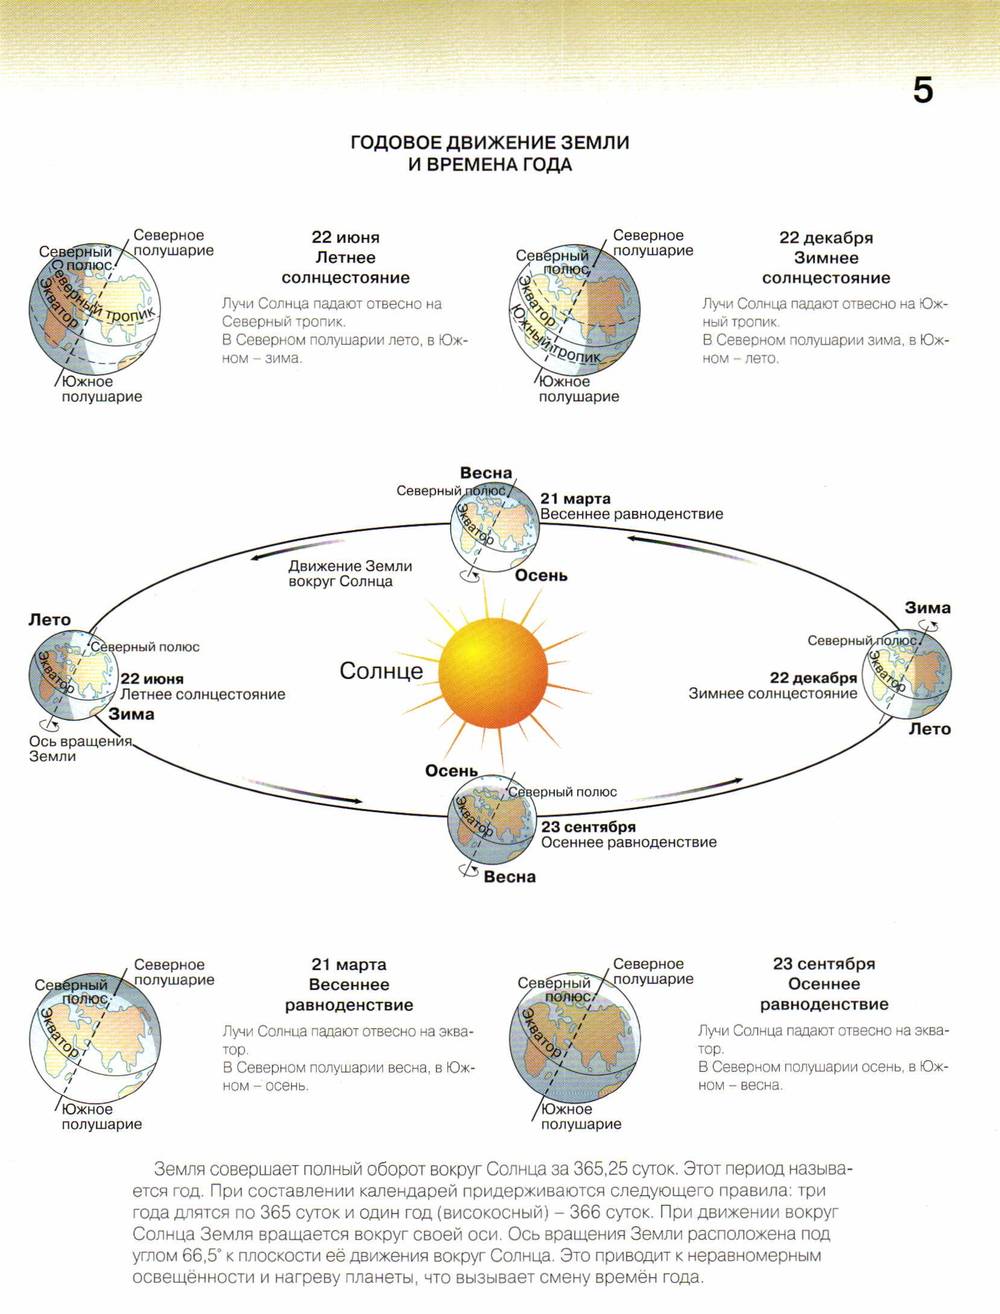 Где находится солнце в день солнцестояния. Схема движения земли вокруг солнца. Вращение земли вокруг солнца с солнцестояниями. Положение земли в дни равноденствия и солнцестояния схема. Схема годового вращения земли вокруг солнца.